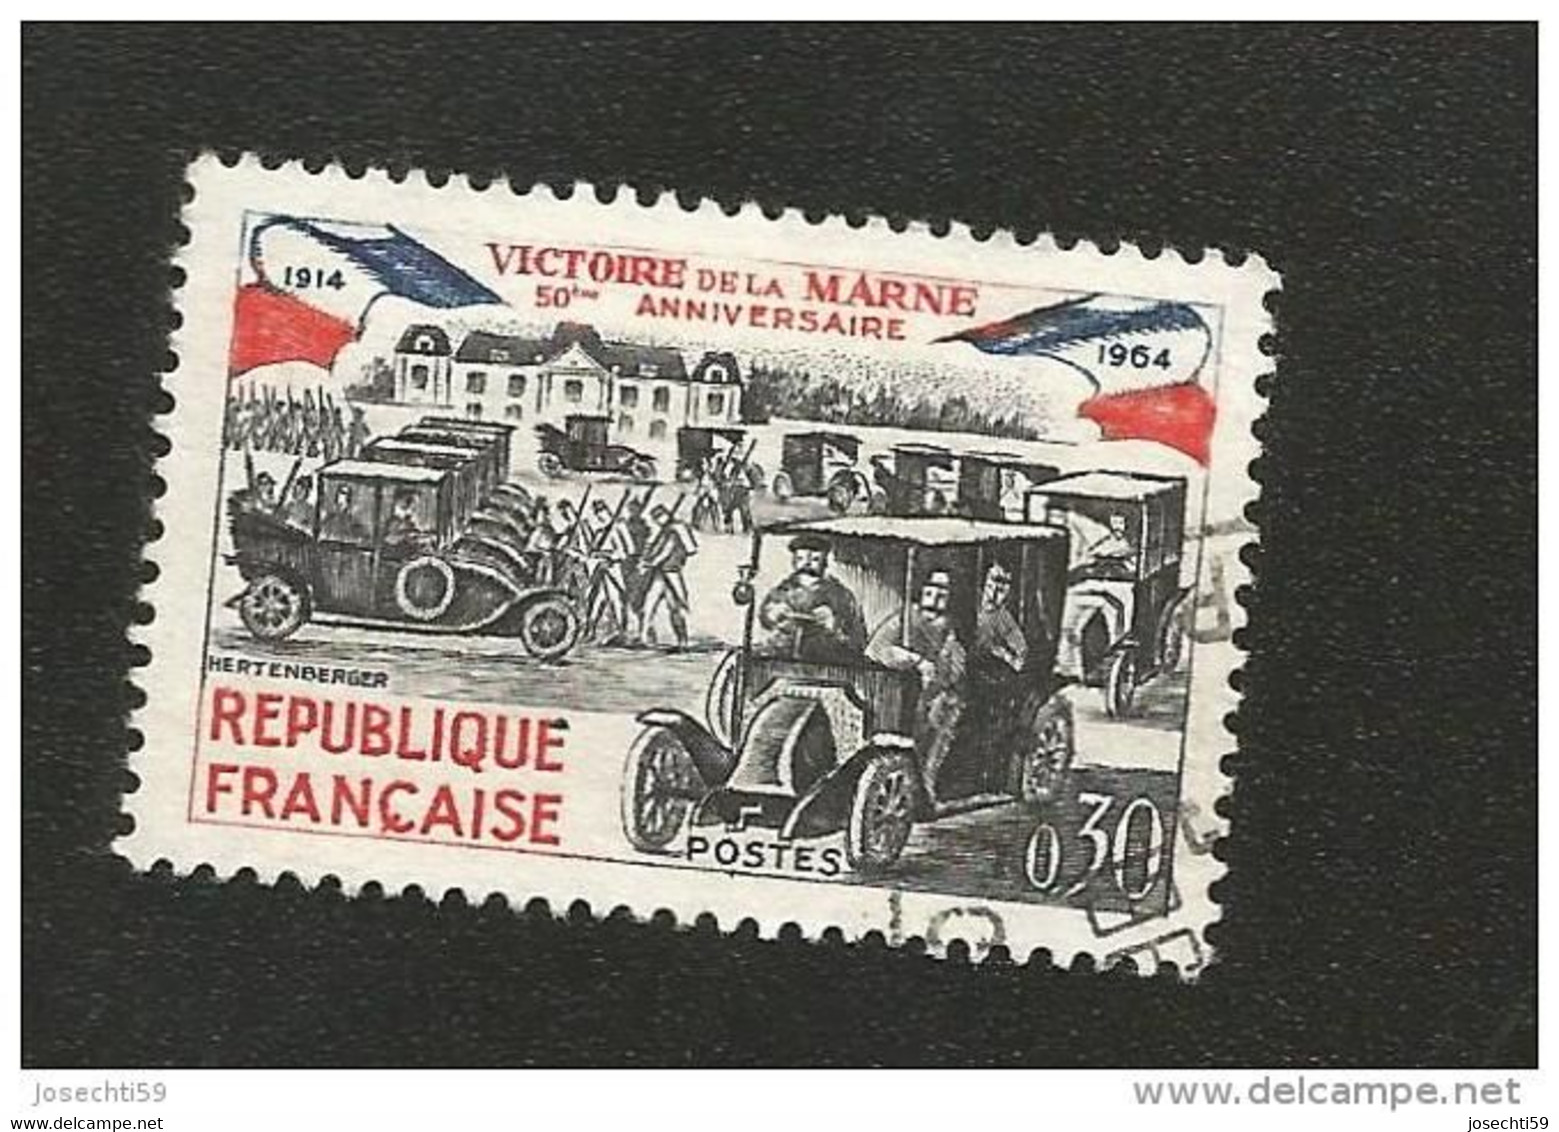 N° 1429 Victoire De La Marne 50ème Anniversaire Variété Encre Baveuse  Timbre  France Oblitéré 1964 - Used Stamps